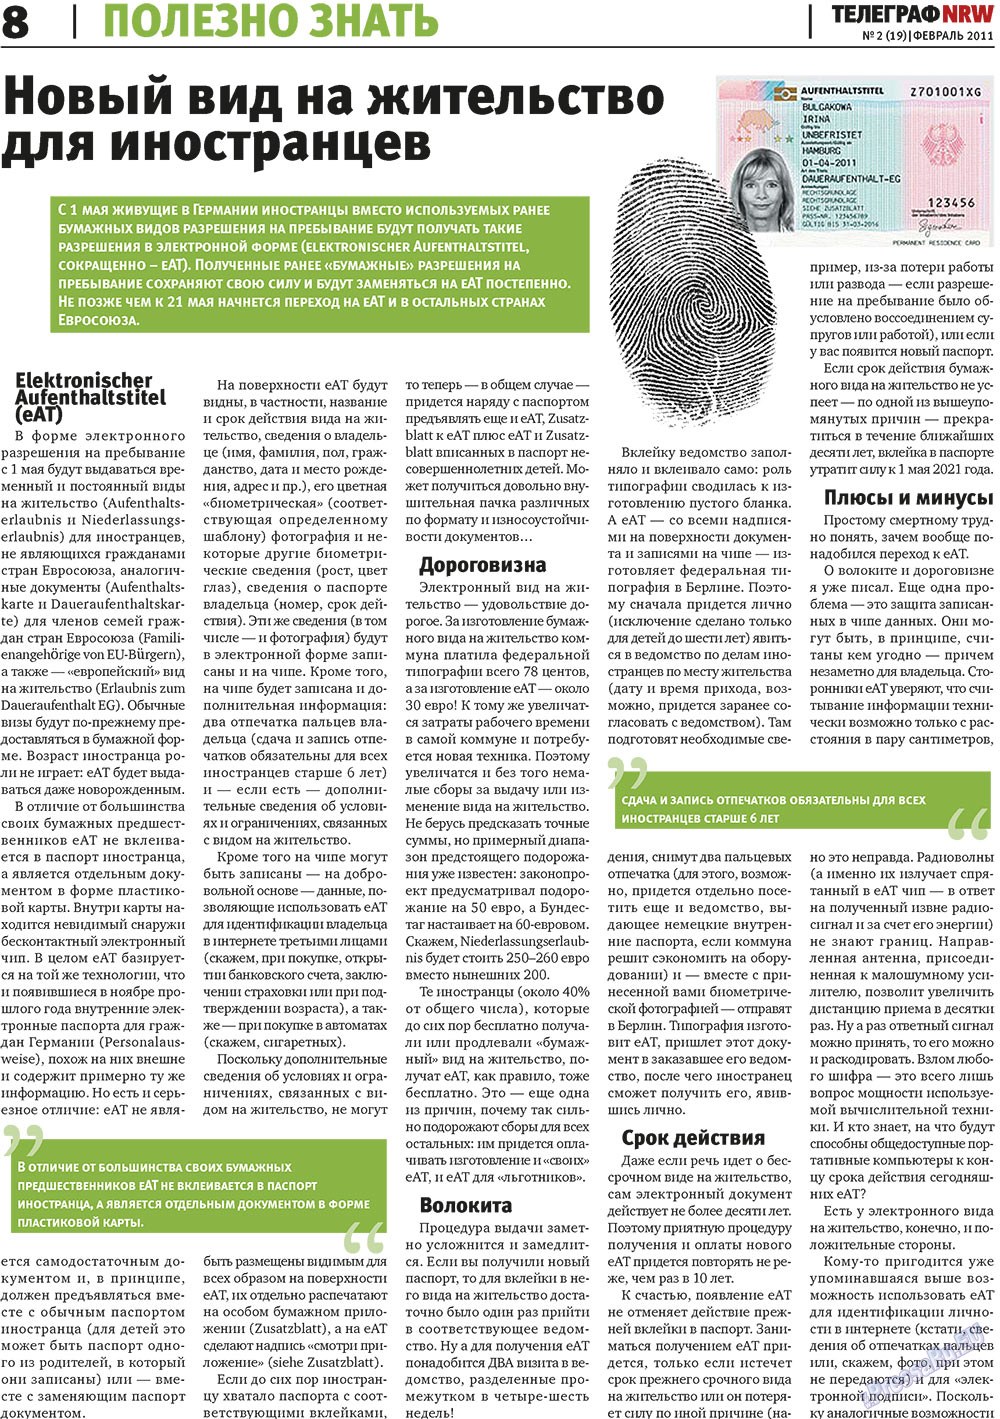 Телеграф NRW (газета). 2011 год, номер 2, стр. 8